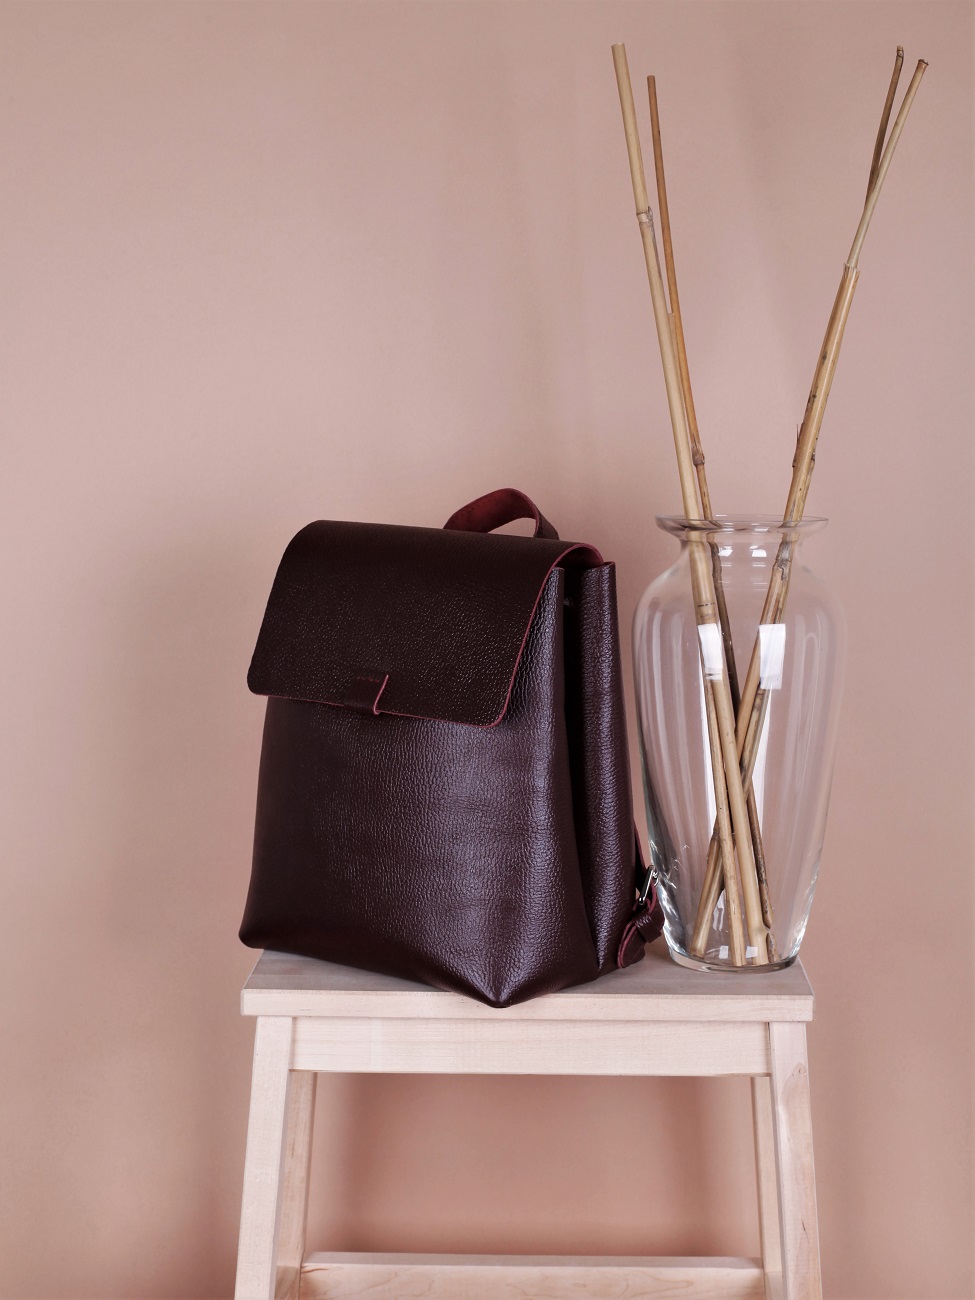 Женский кожаный рюкзак бордовый B003 burgundy grain